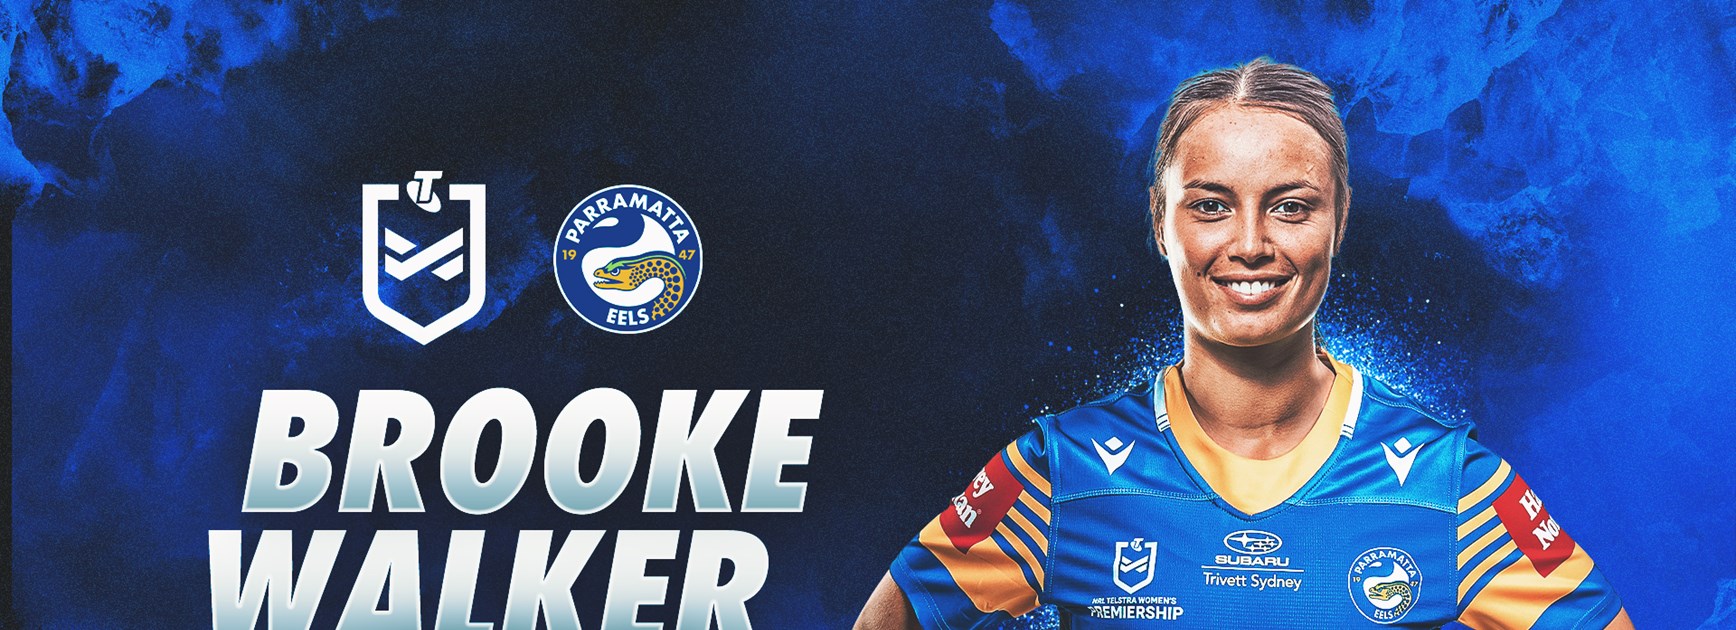 Former AFLW player Brooke Walker signs with Eels | Eels